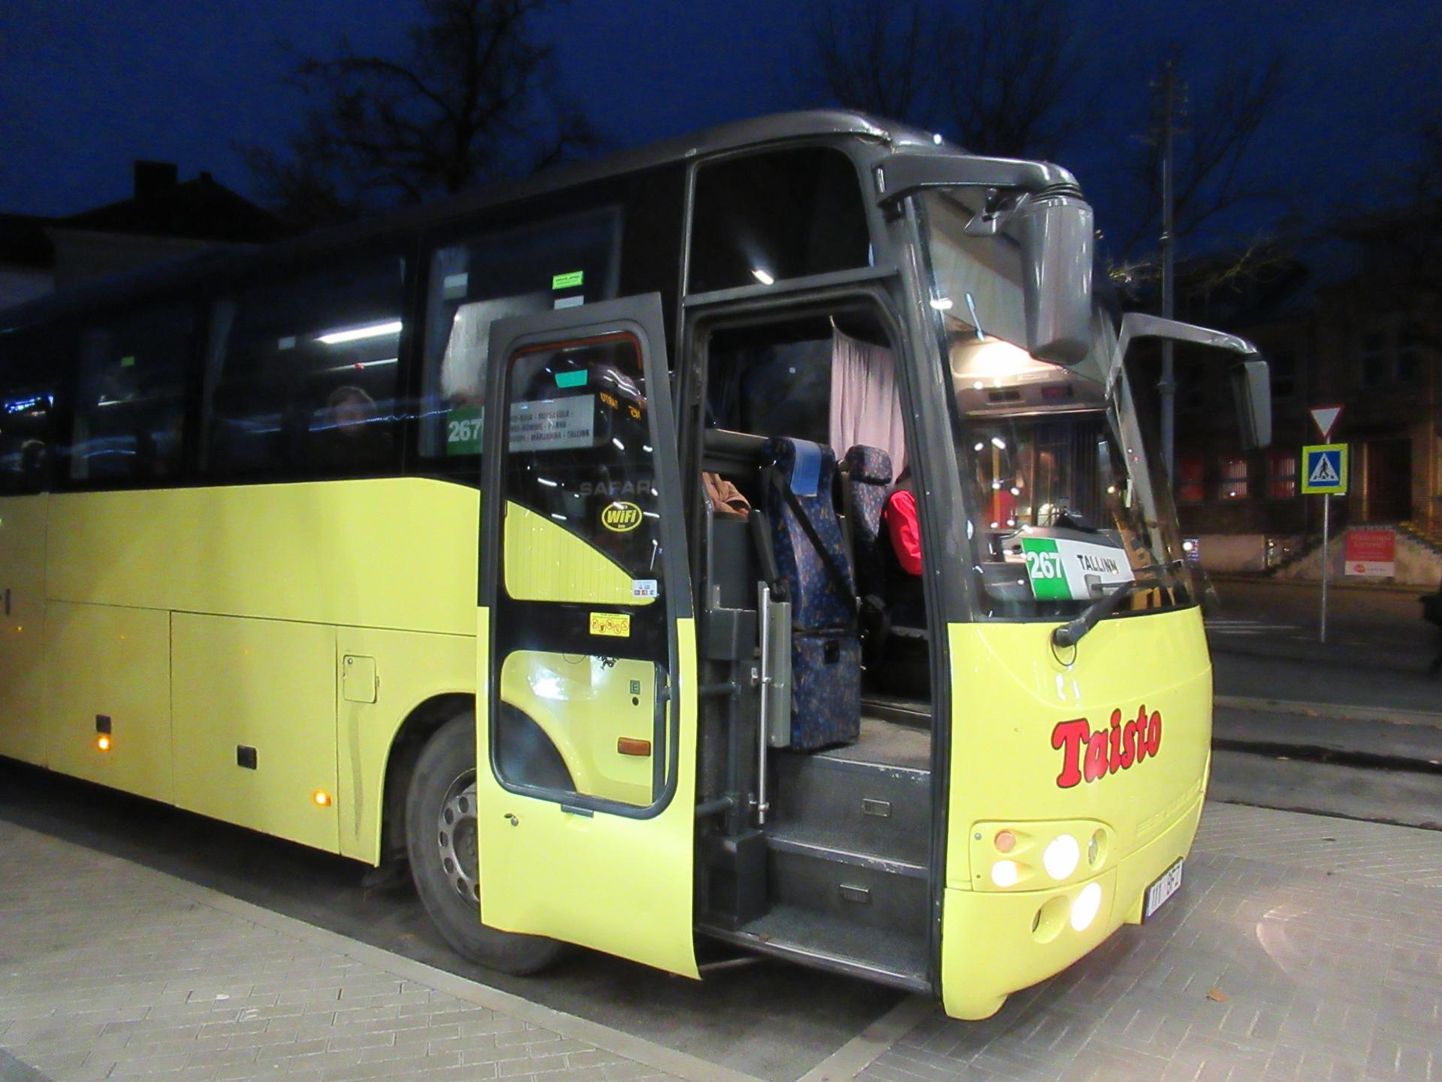 Taisto bussid ei pruugi Eesti teedelt lähiajal siiski kaduda, kuna kontserni kuulub mitu transpordiettevõtet ja ühe pankroti korral võivad teised tegevust jätkata.
Silvia Paluoja